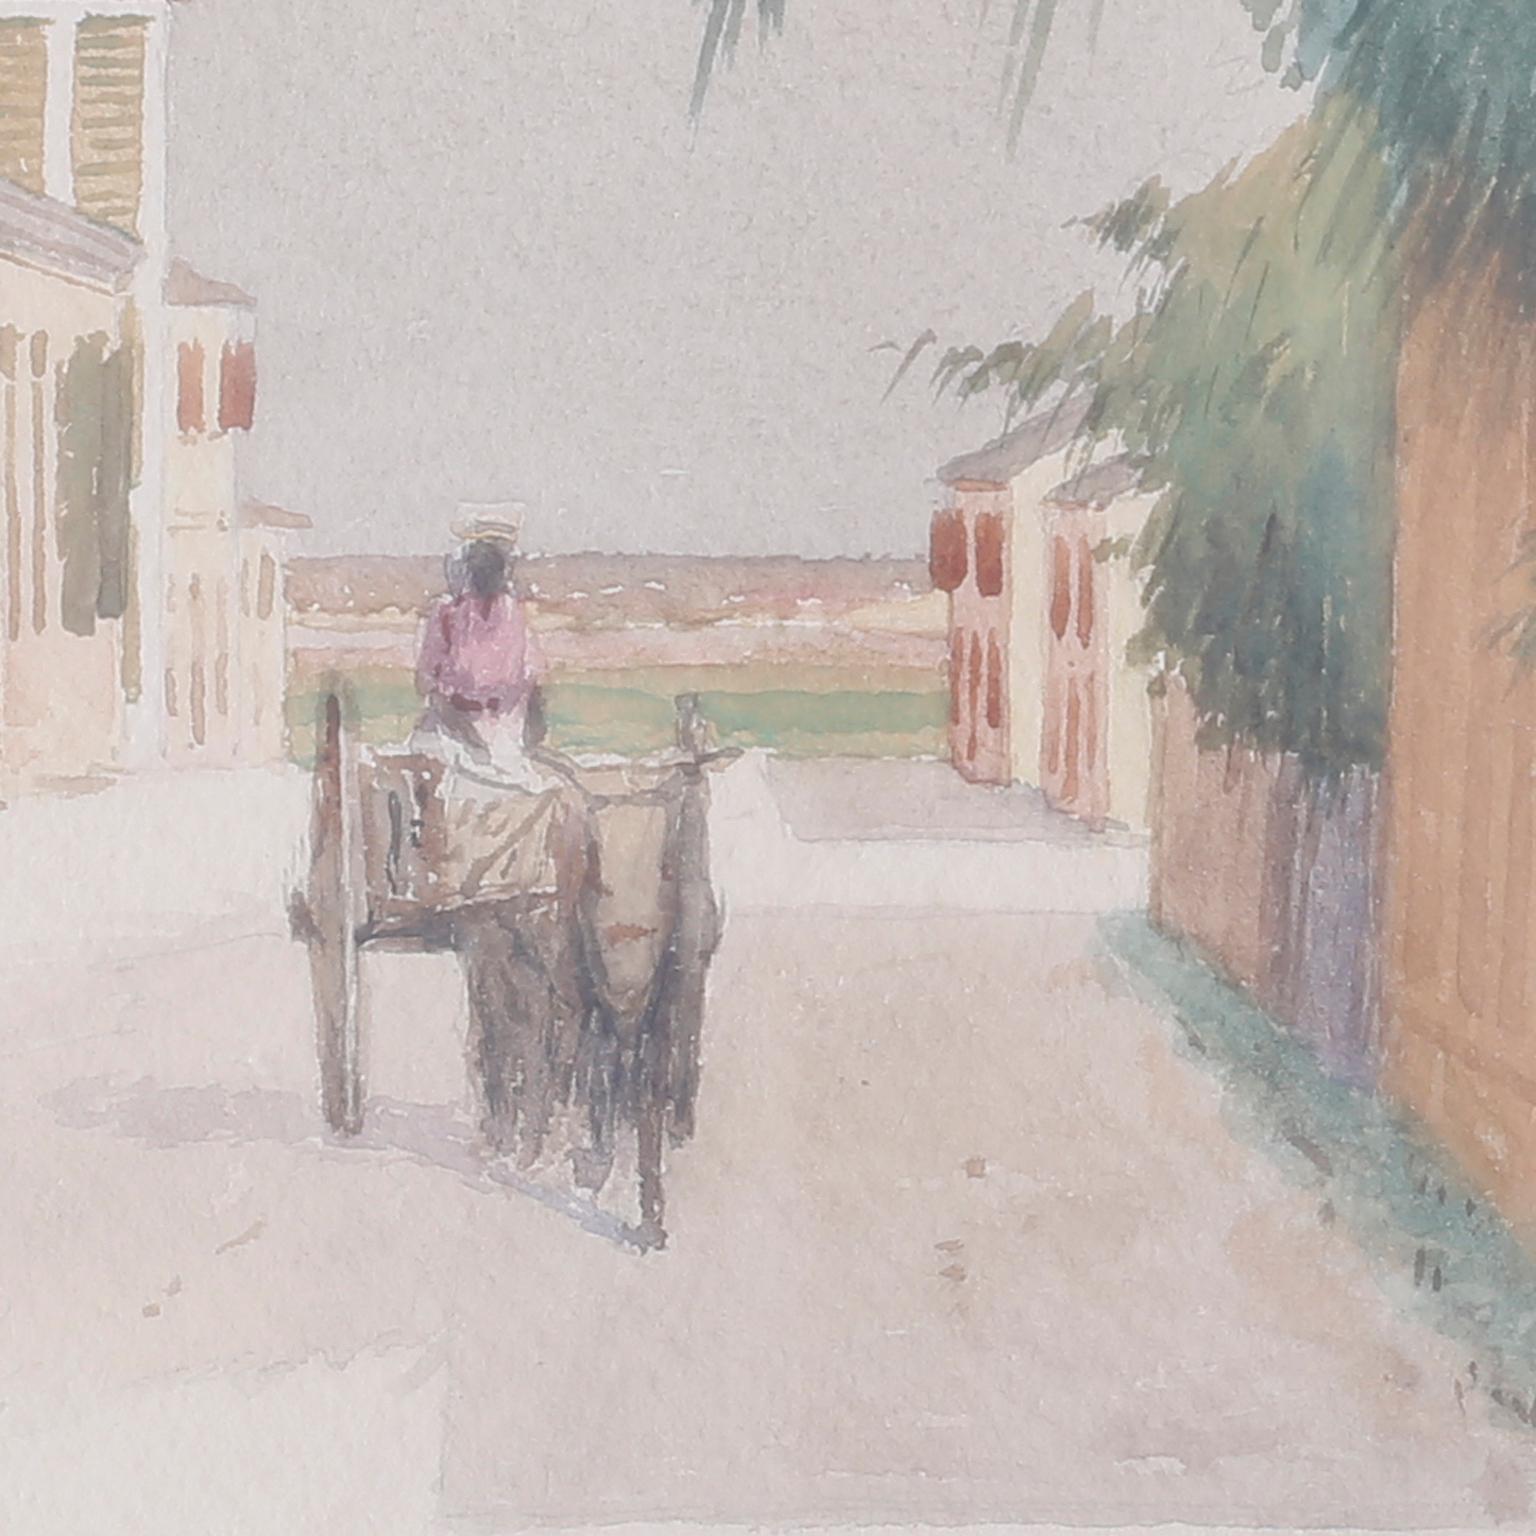 Aquarell einer bahamaischen Straßenszene, möglicherweise in Nassau. Mit einer Frau, die ein Bündel trägt, einem Mann in einem Wagen, Palmen, einem Haus, Toren und einem warmen, friedlichen Ambiente. Signiert Hartwell Leon Woodcock in der unteren